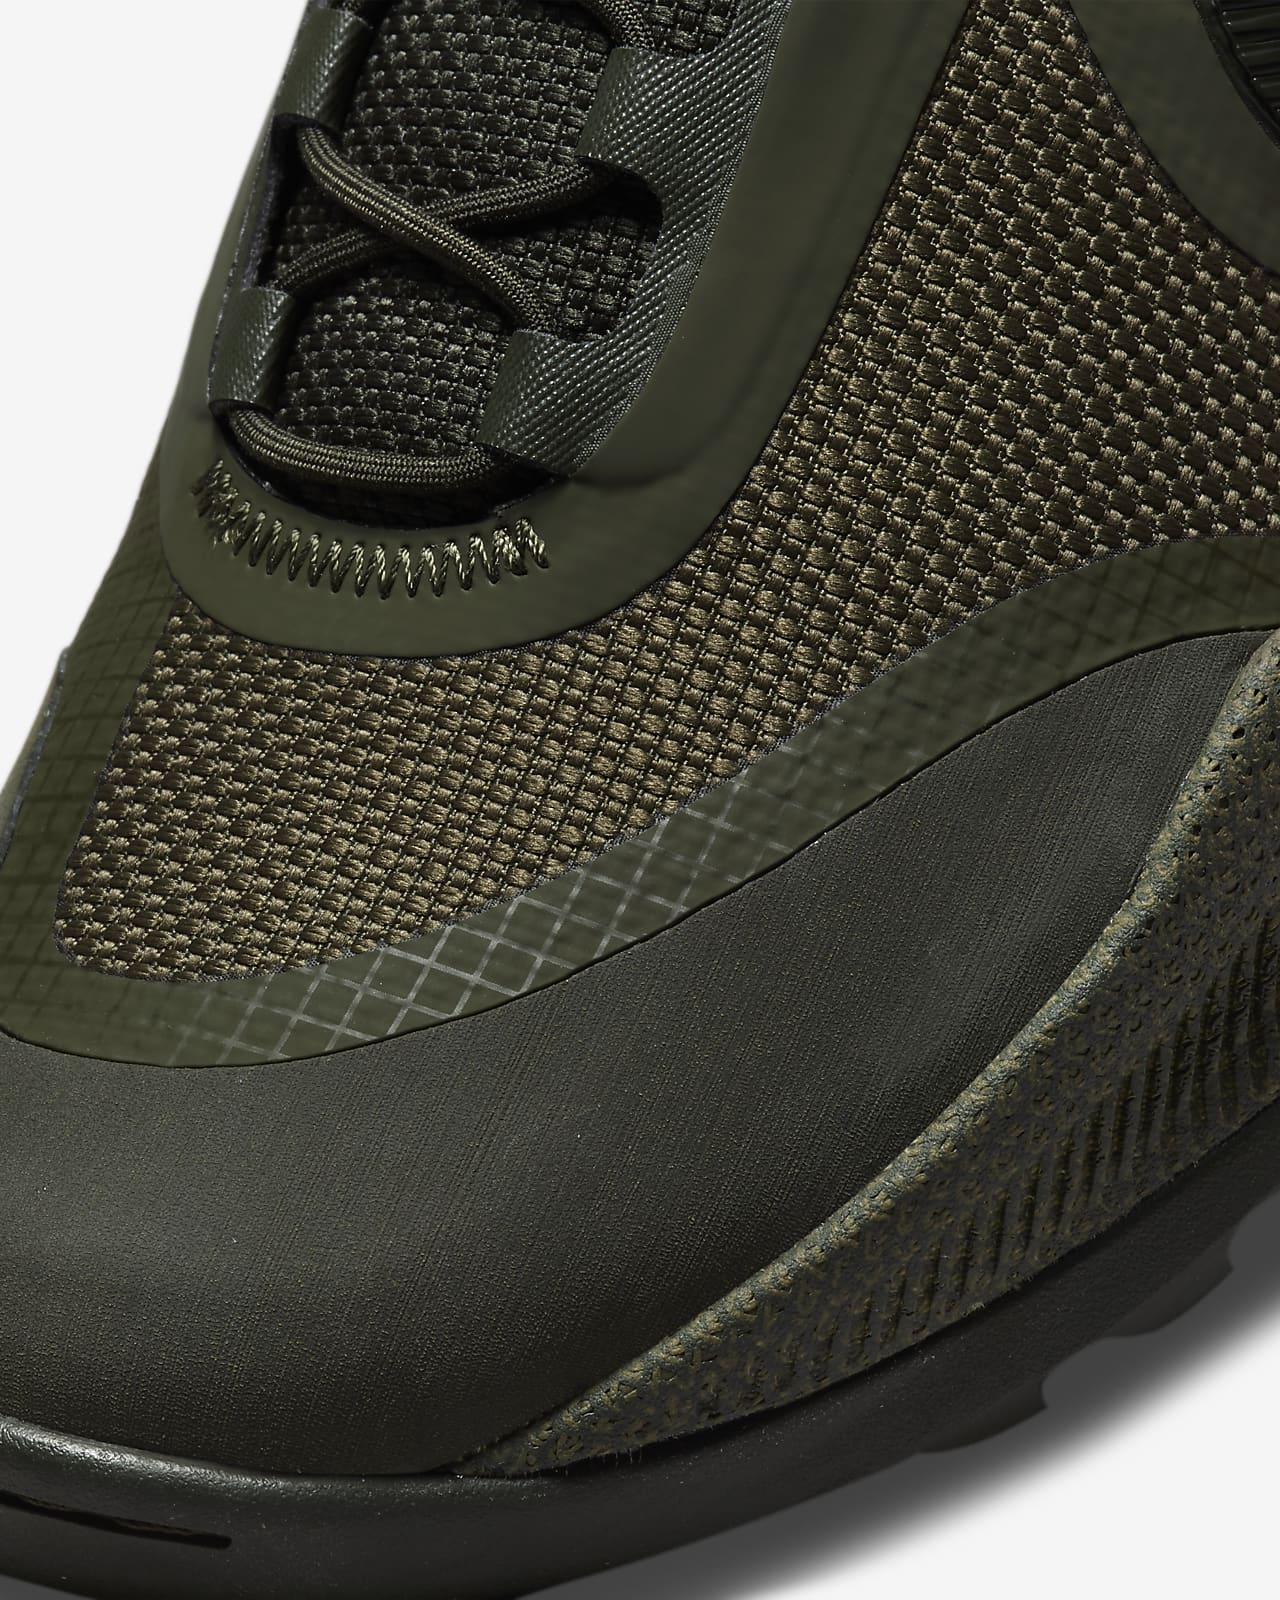 Nike React SFB Carbon Low Men’s Elite Outdoor Shoes